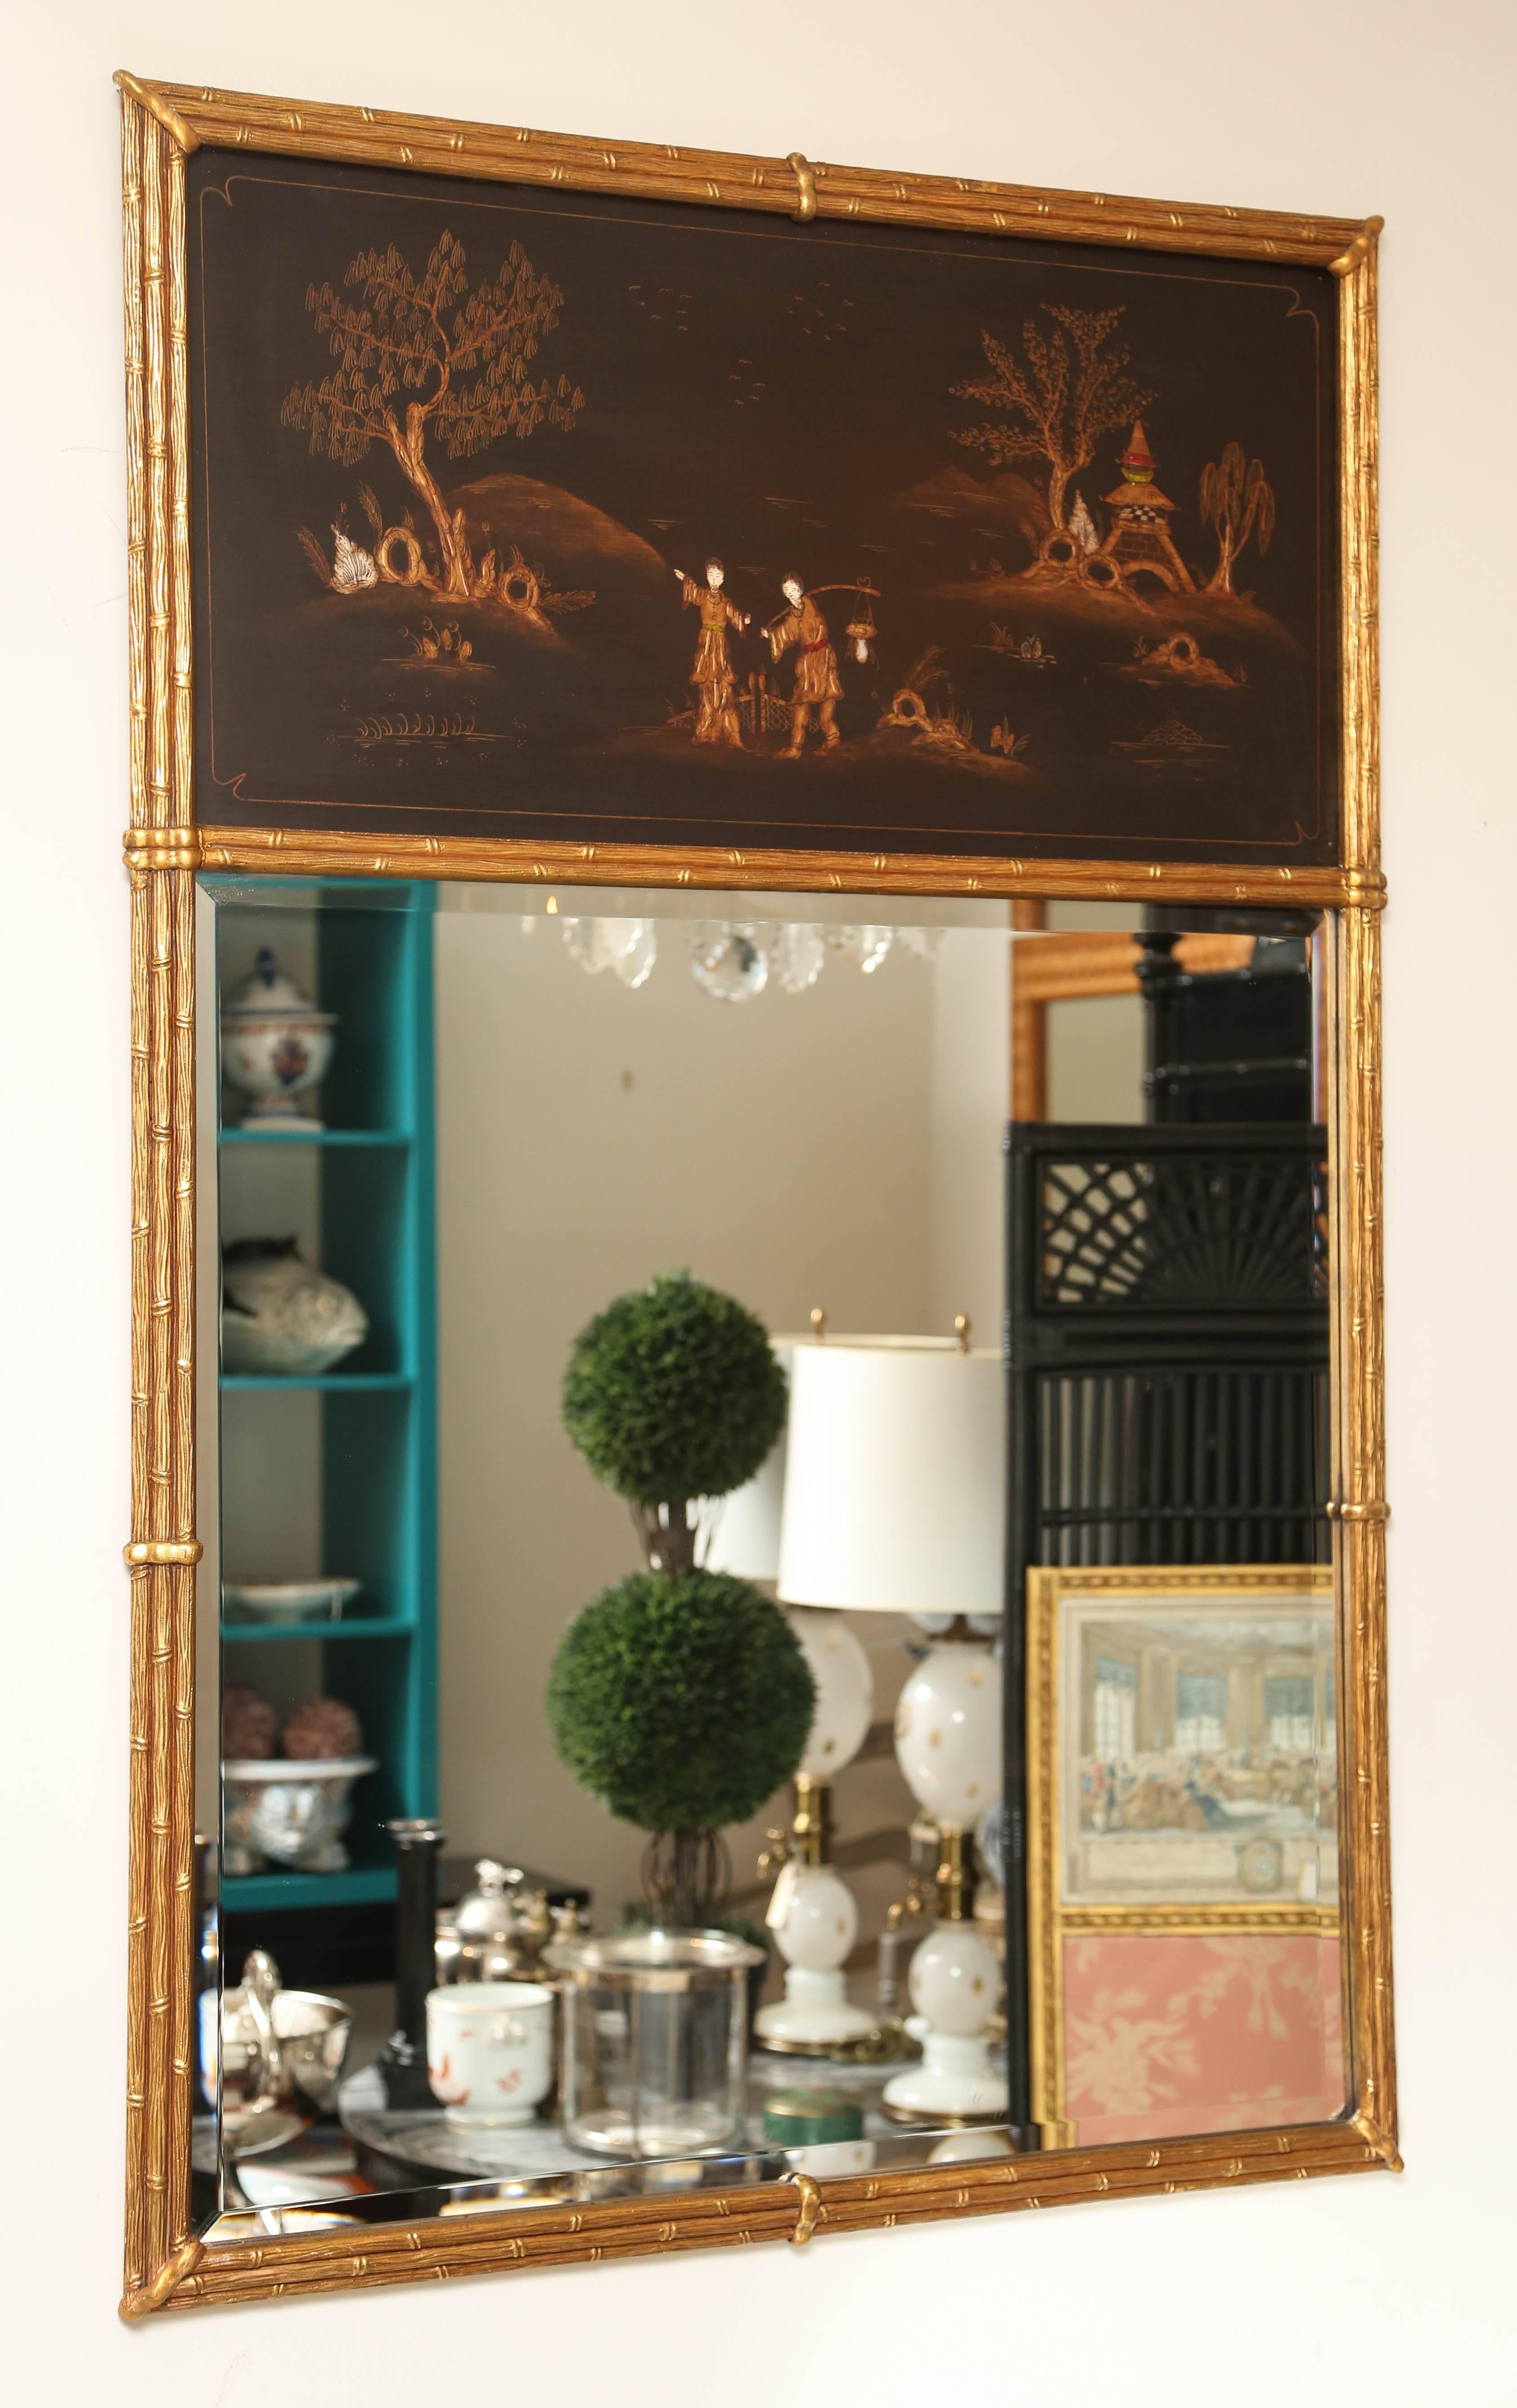 Klassischer Chinoiserie-Trumeau-Spiegel mit schöner orientalischer Malerei. Rahmen aus vergoldetem Holz und Bambusimitat.